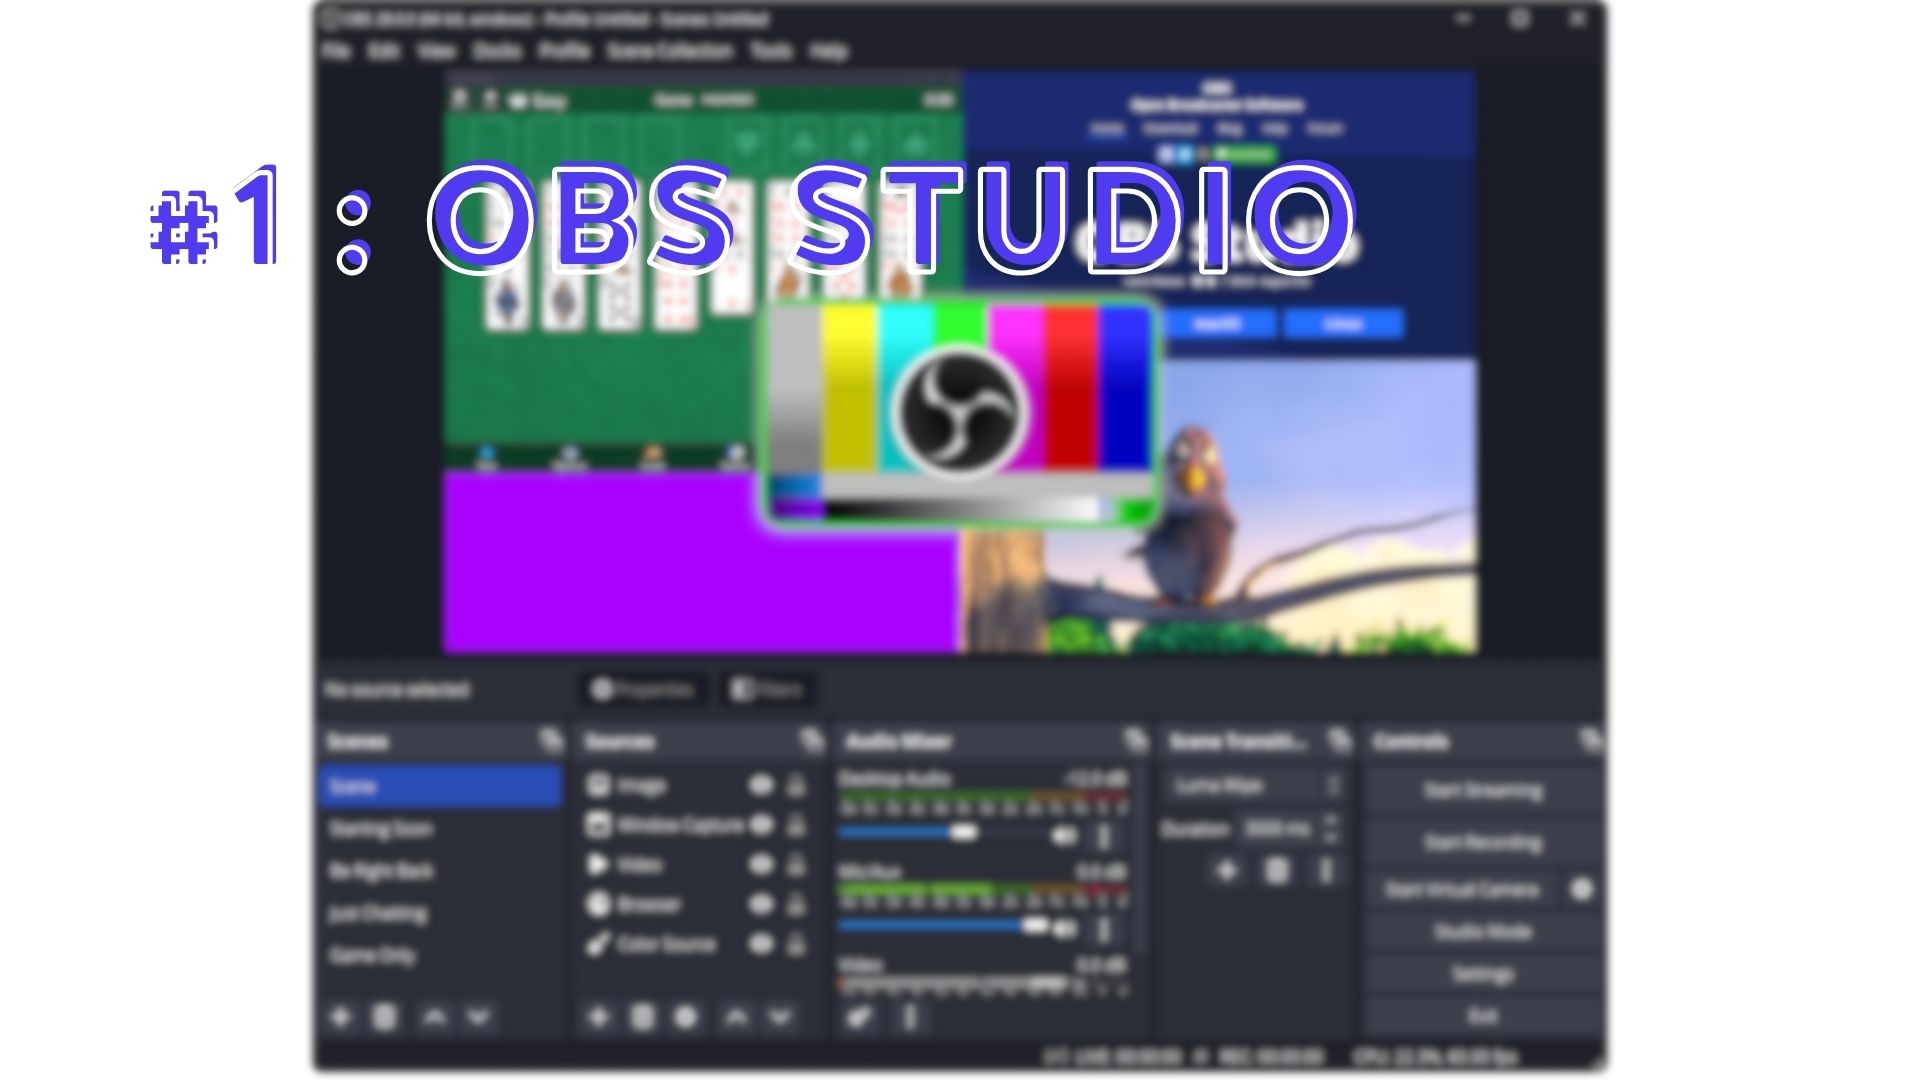 OBS logiciel streaming live